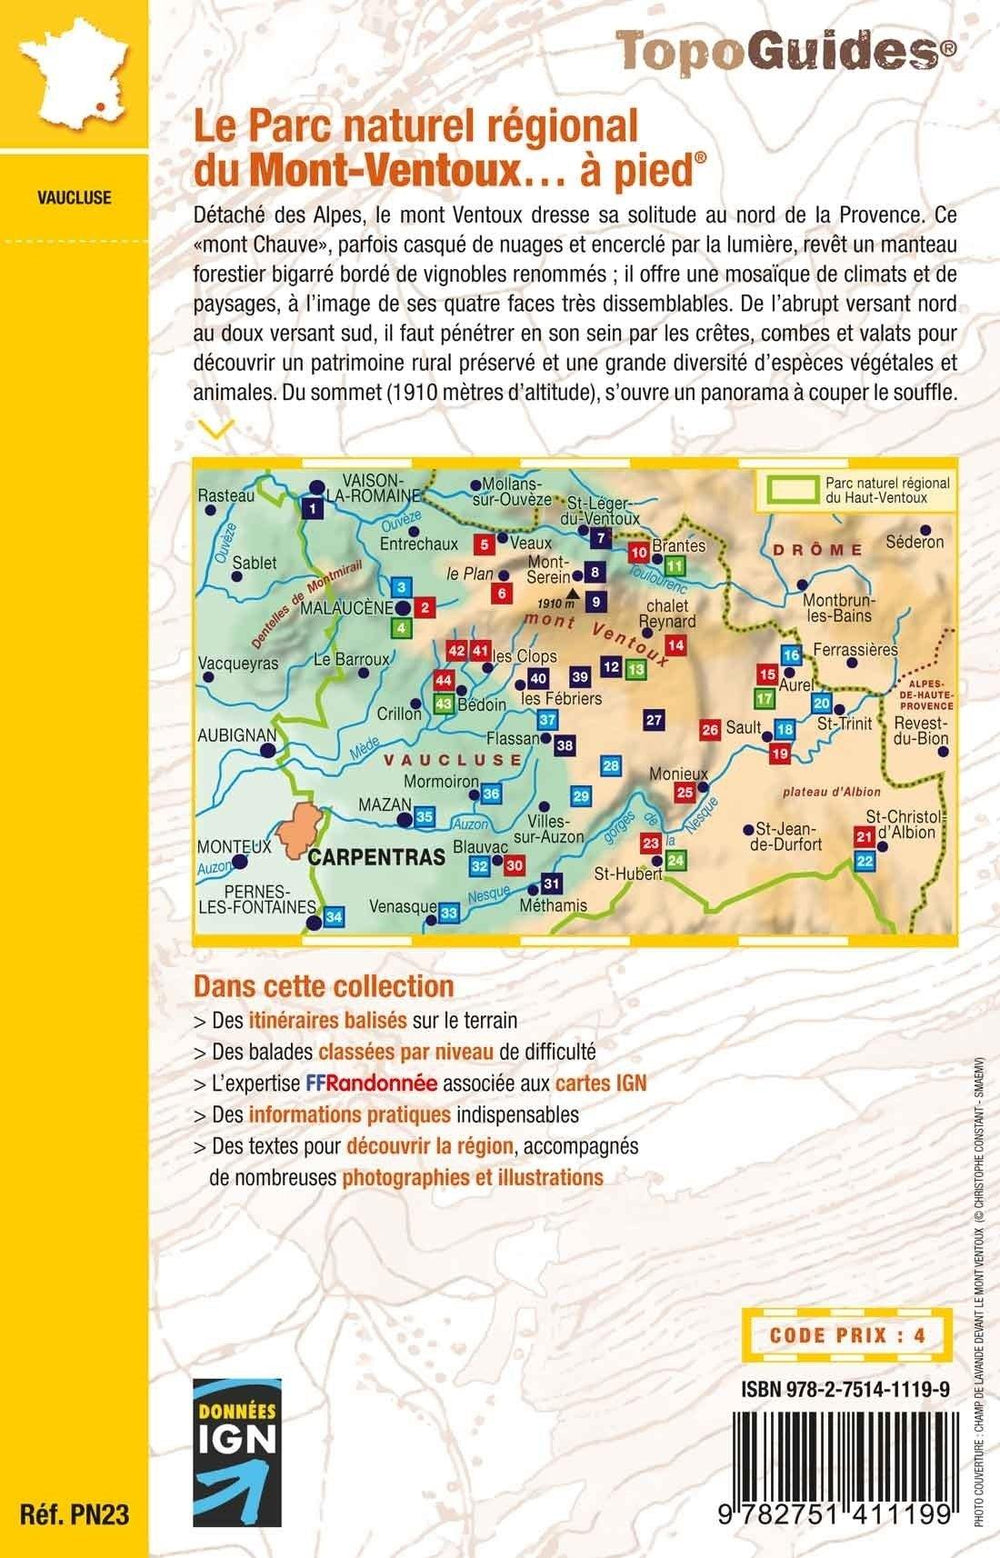 Topoguide de randonnée - Parc Naturel Régional du Mont-Ventoux | FFR guide de randonnée FFR - Fédération Française de Randonnée 